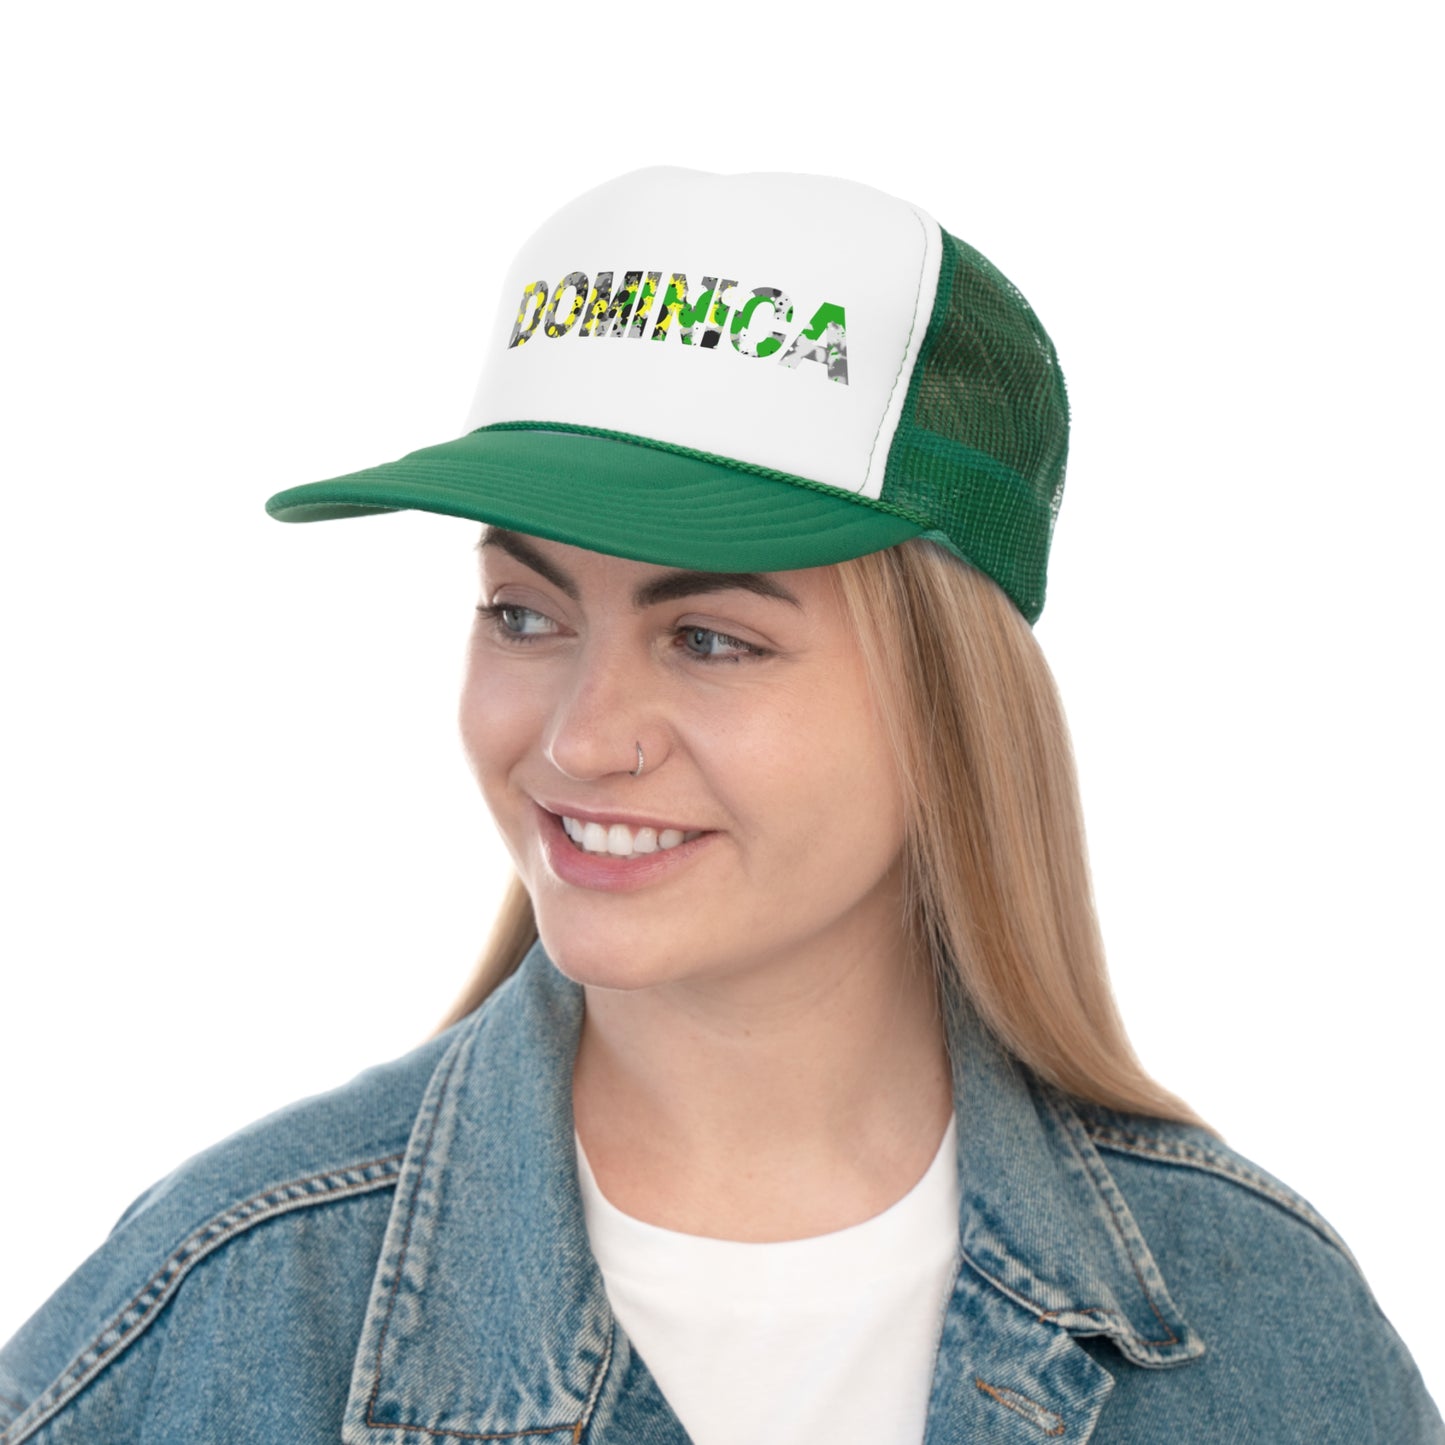 Dominica Trucker Caps